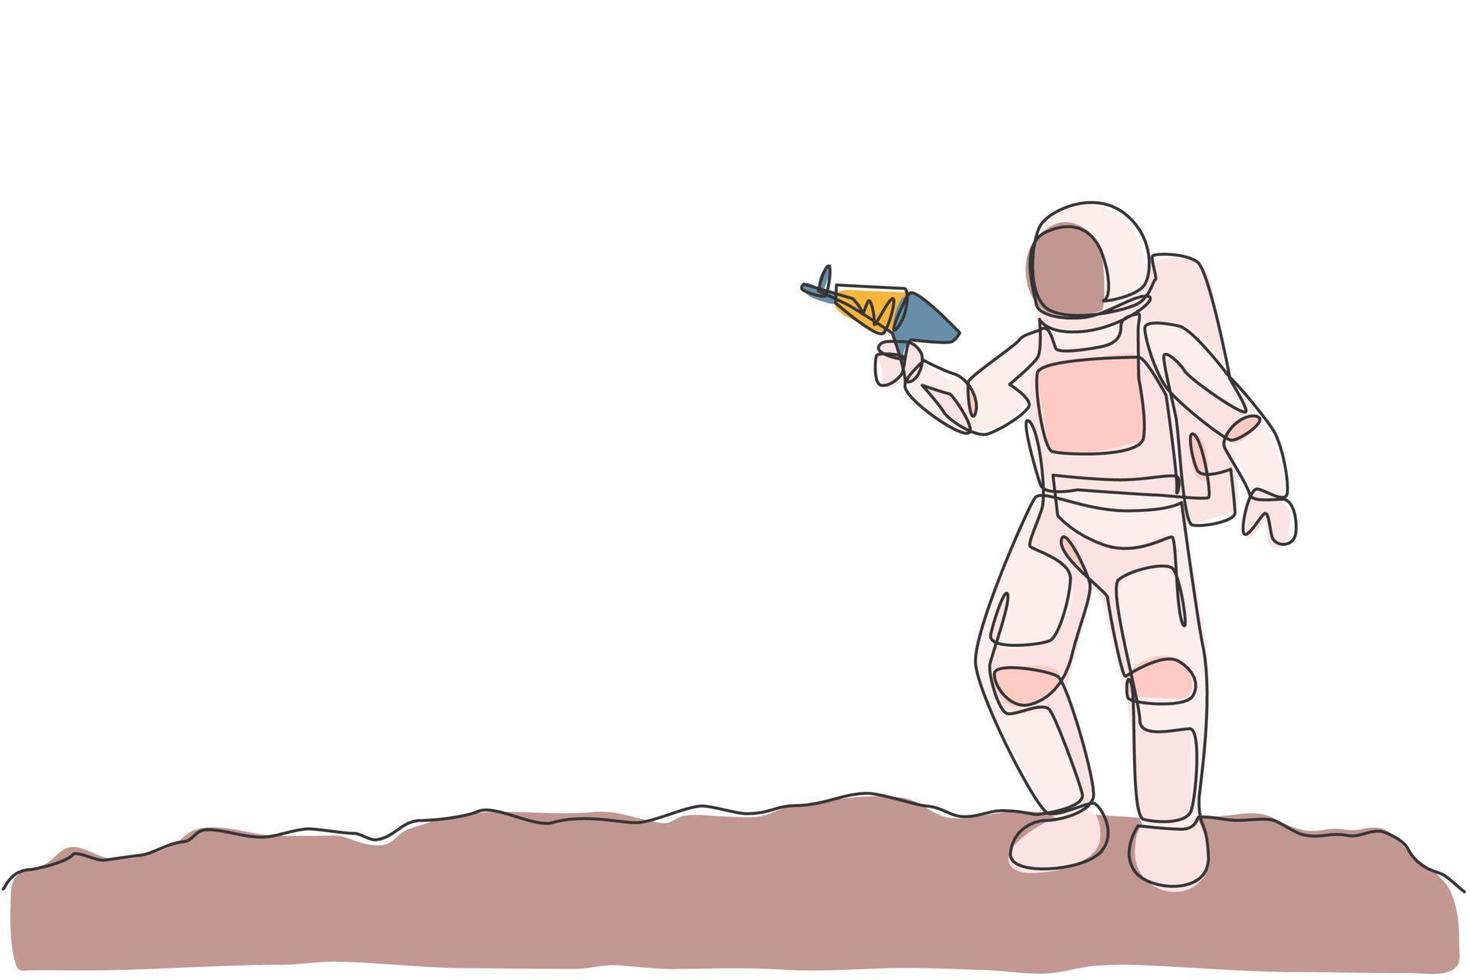 dibujo de una sola línea continua de un joven astronauta sosteniendo una pistola láser espacial y posar para disparar en la superficie de la luna. concepto del espacio exterior del cosmonauta. Ilustración de vector gráfico de diseño de dibujo de una línea de moda